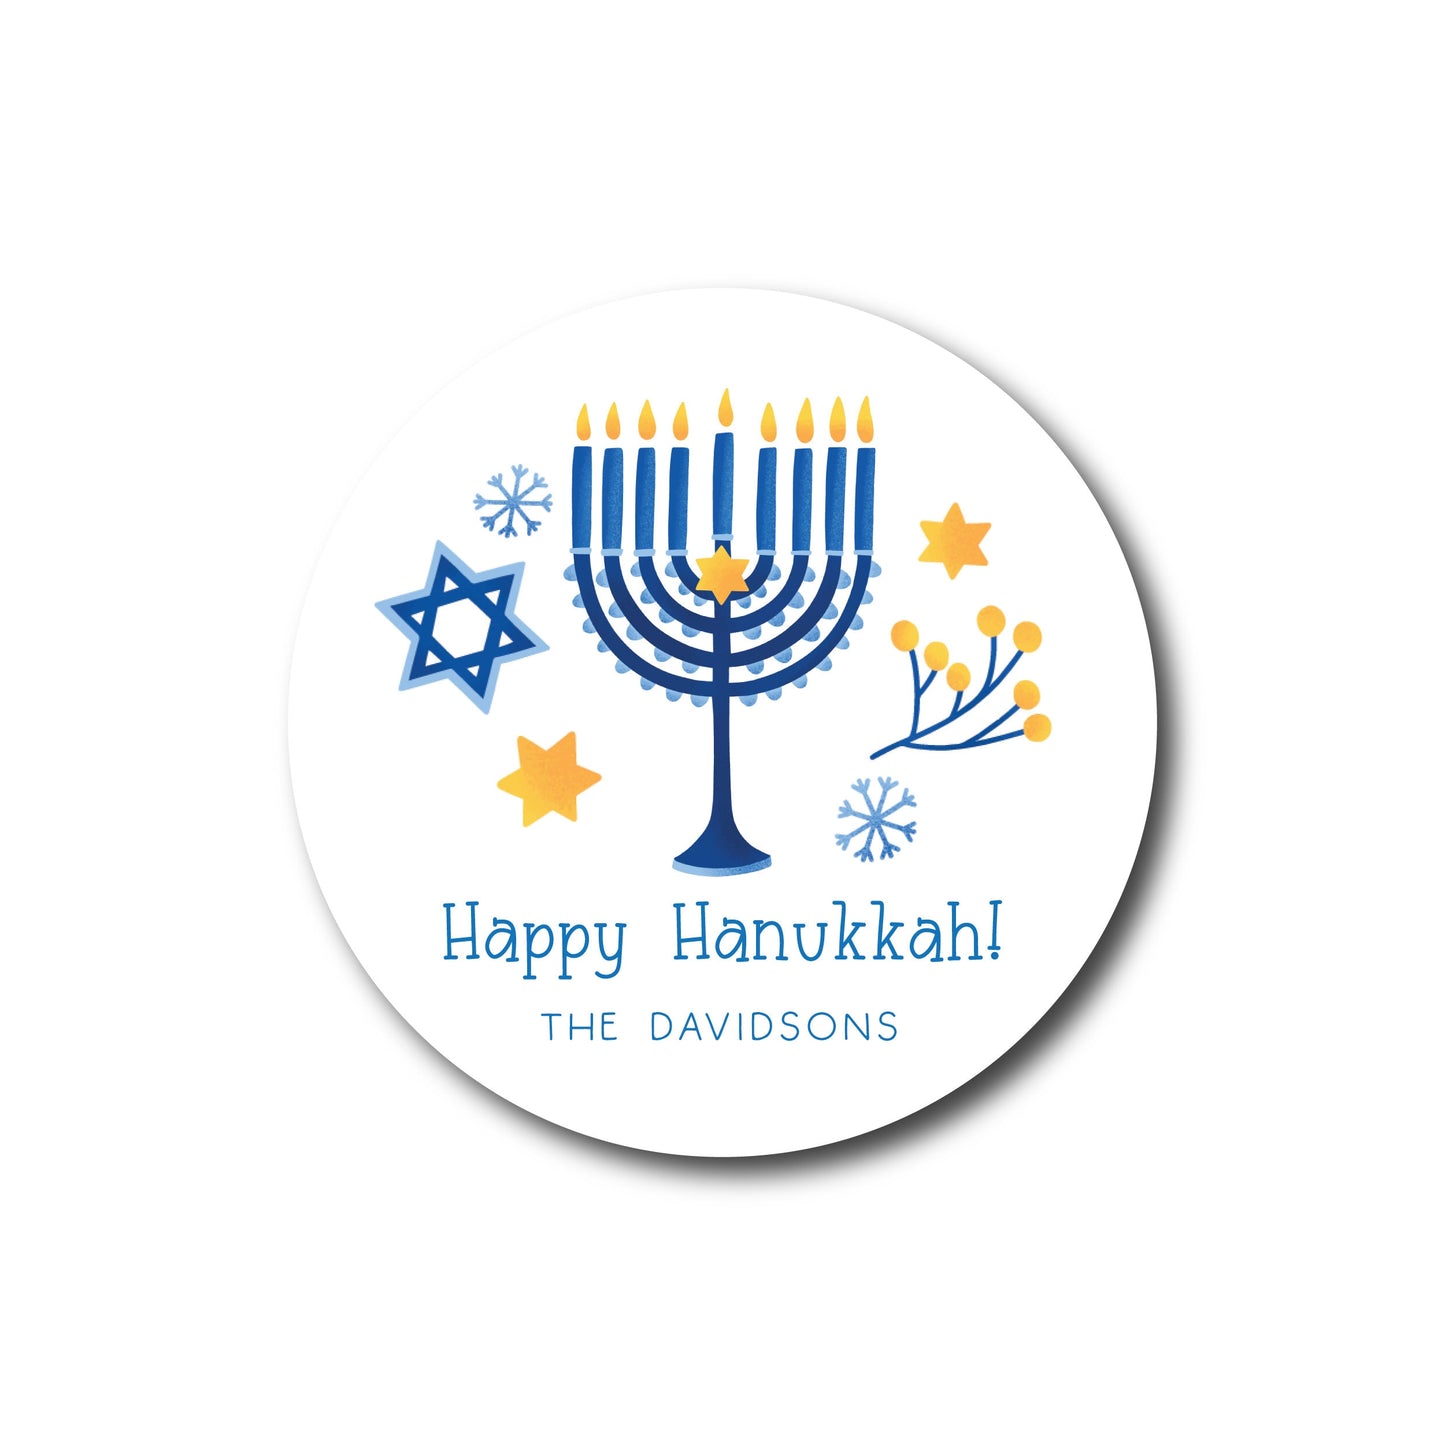 Hanukkah Stickers - Happy Hannukah Labels, Chanukah Stickers, Festive Hanukah Gift Wrap Supplies, Hanukah Party Favors, Personalized Sticker